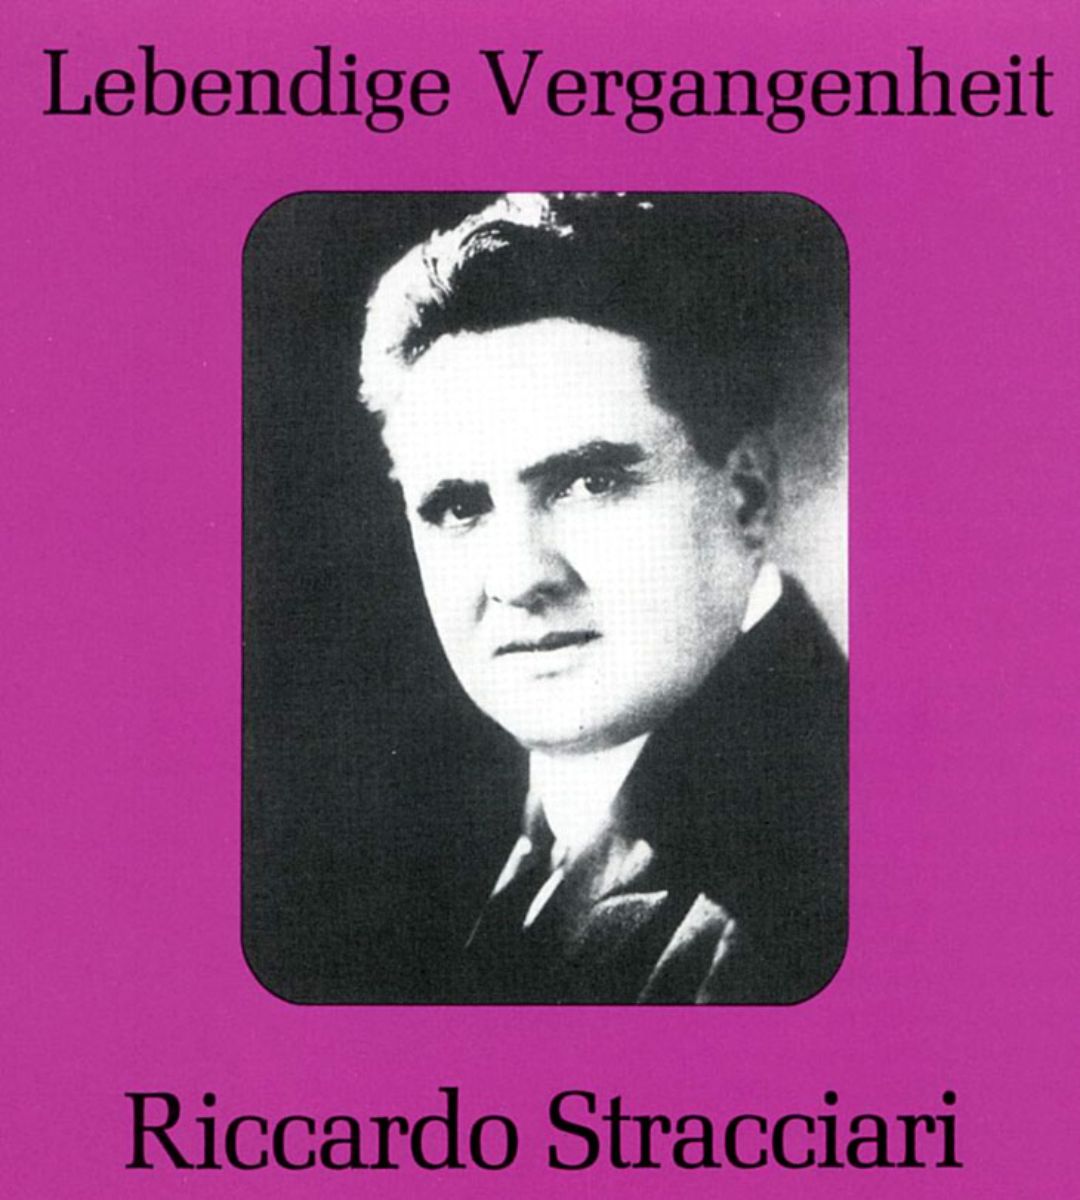 Riccardo Stracciari